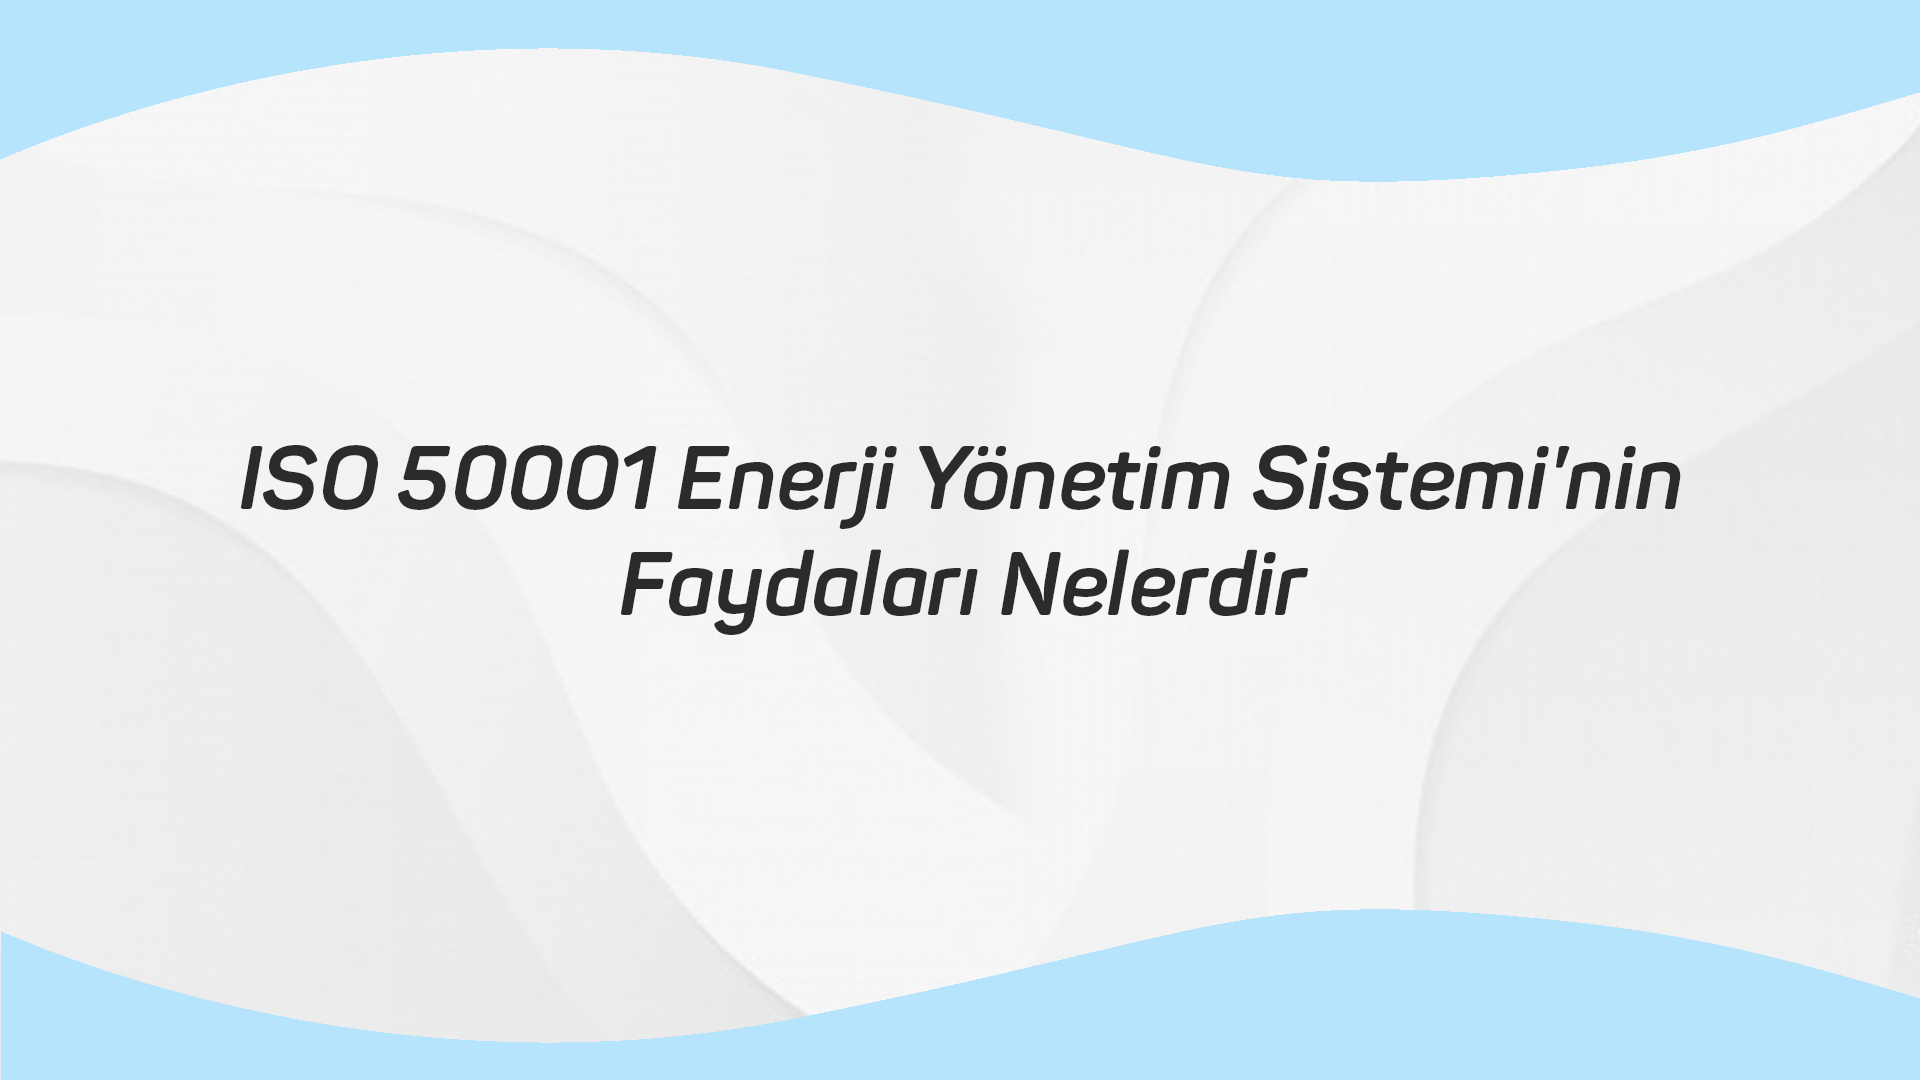 ISO 50001 Enerji Yönetim Sistemi’nin Faydaları Nelerdir